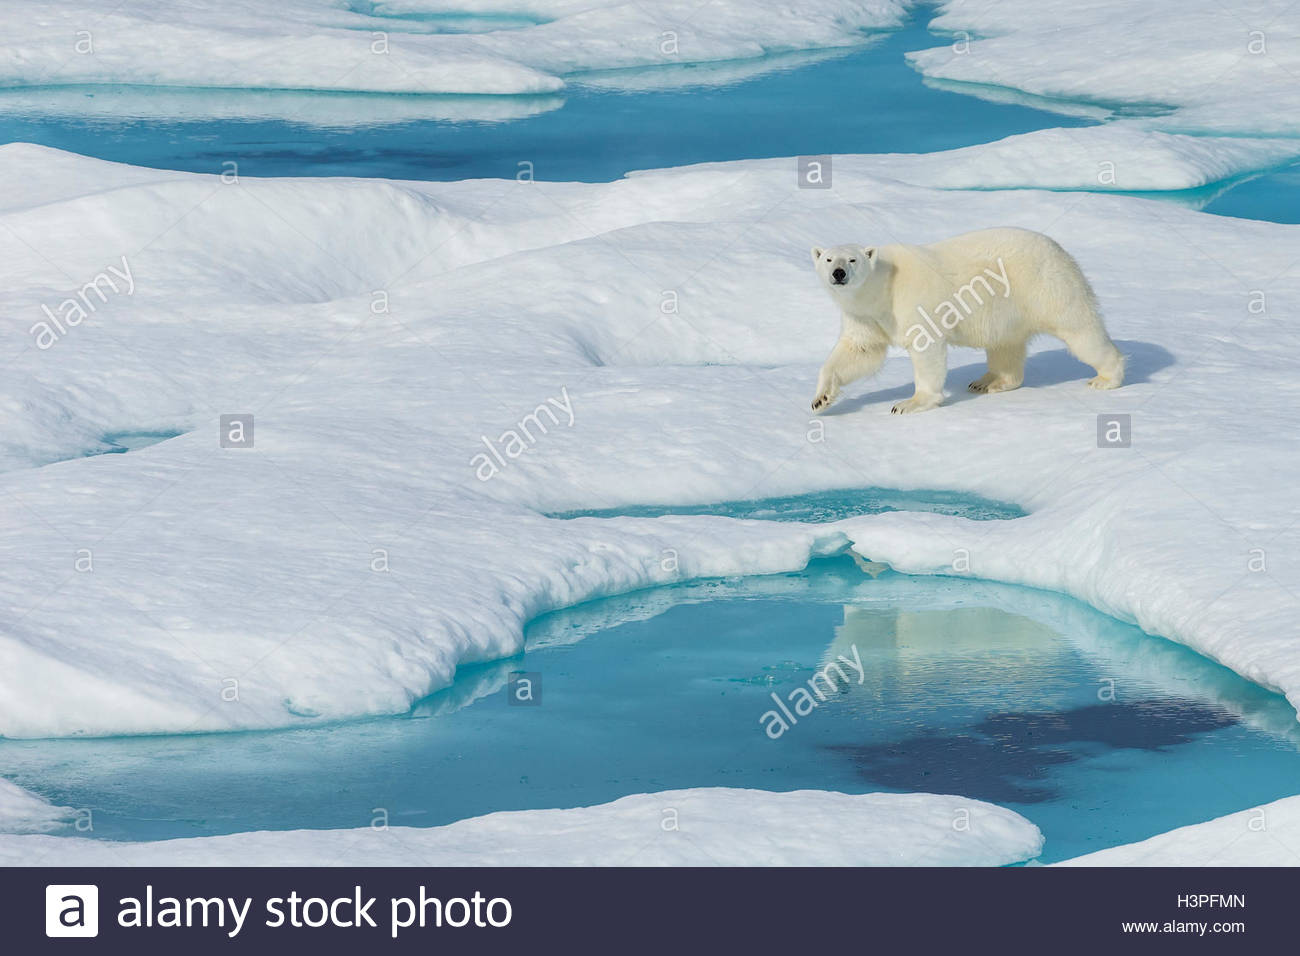 Un orso polare (Ursus maritimus) wanders passato piscine di acqua su un glaçon nell'Artico Canadese. Foto Stock